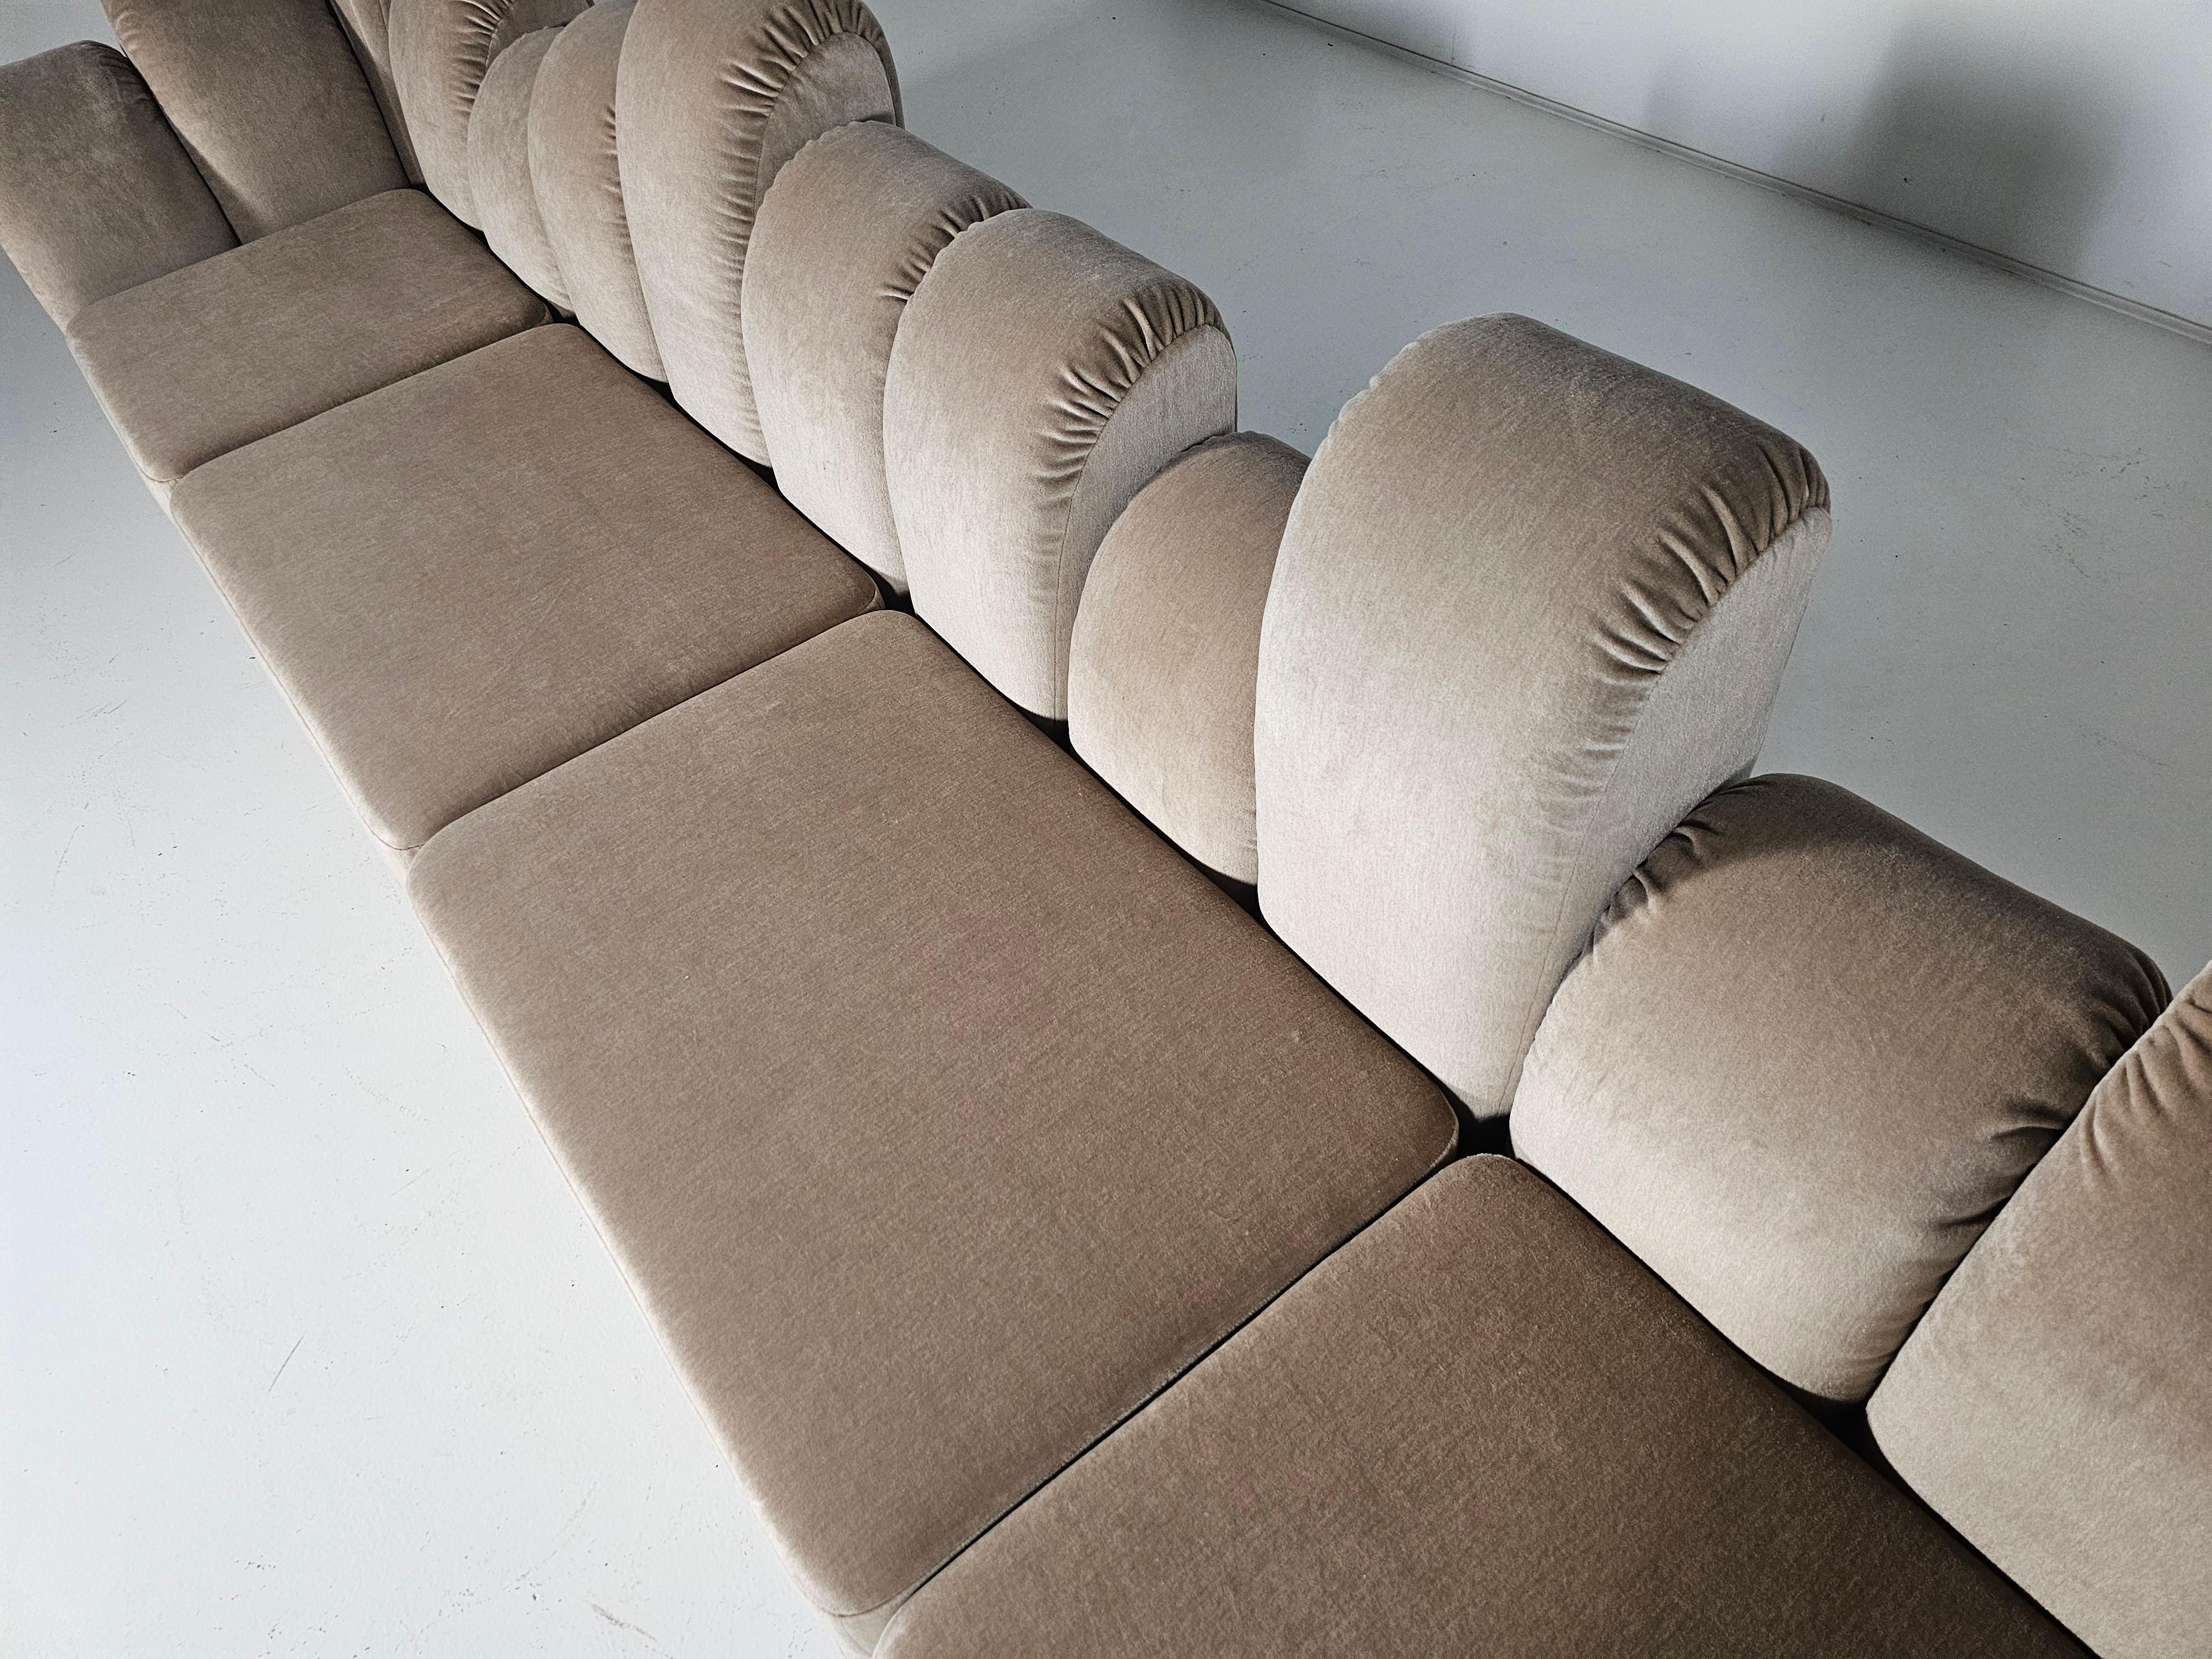 Hans Hopfer 'Dromadaire' Sectional Sofa in beige mohair velvet, Roche Bobois For Sale 5